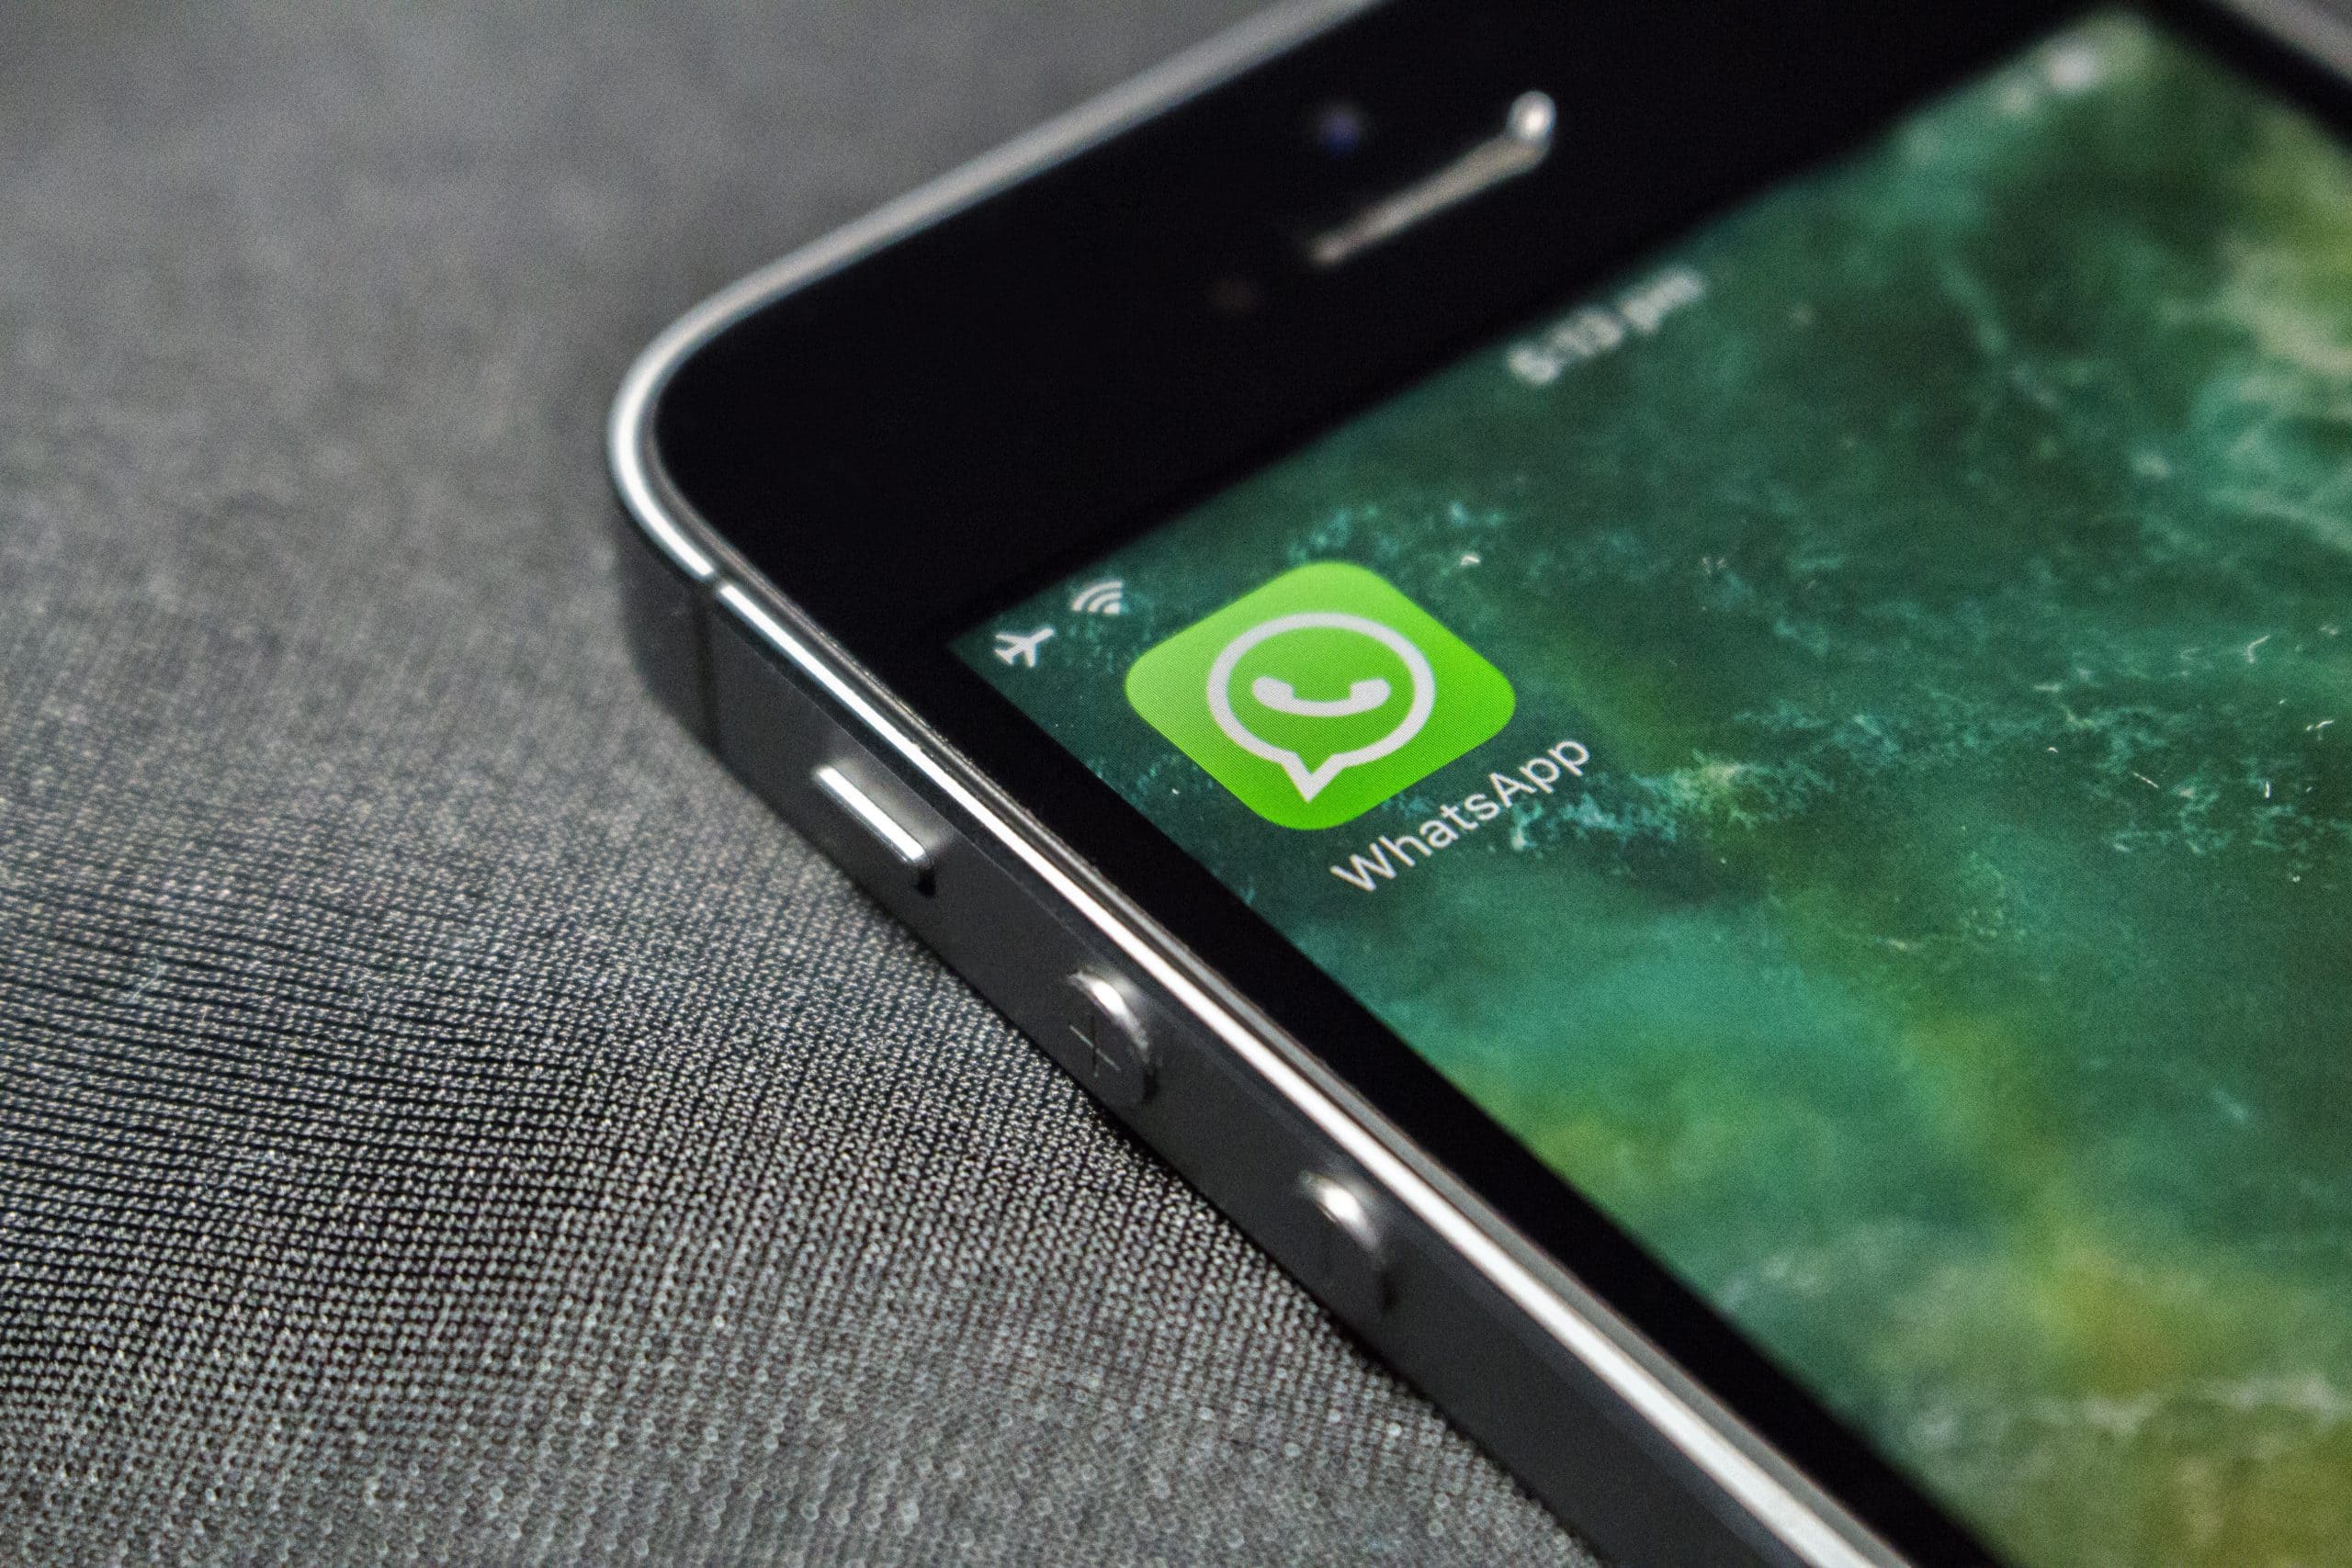 Cara Membuka Telegram Yang Diblokir Teman. Cara Membuka Blokir WhatsApp dari Orang yang Memblokir Kita